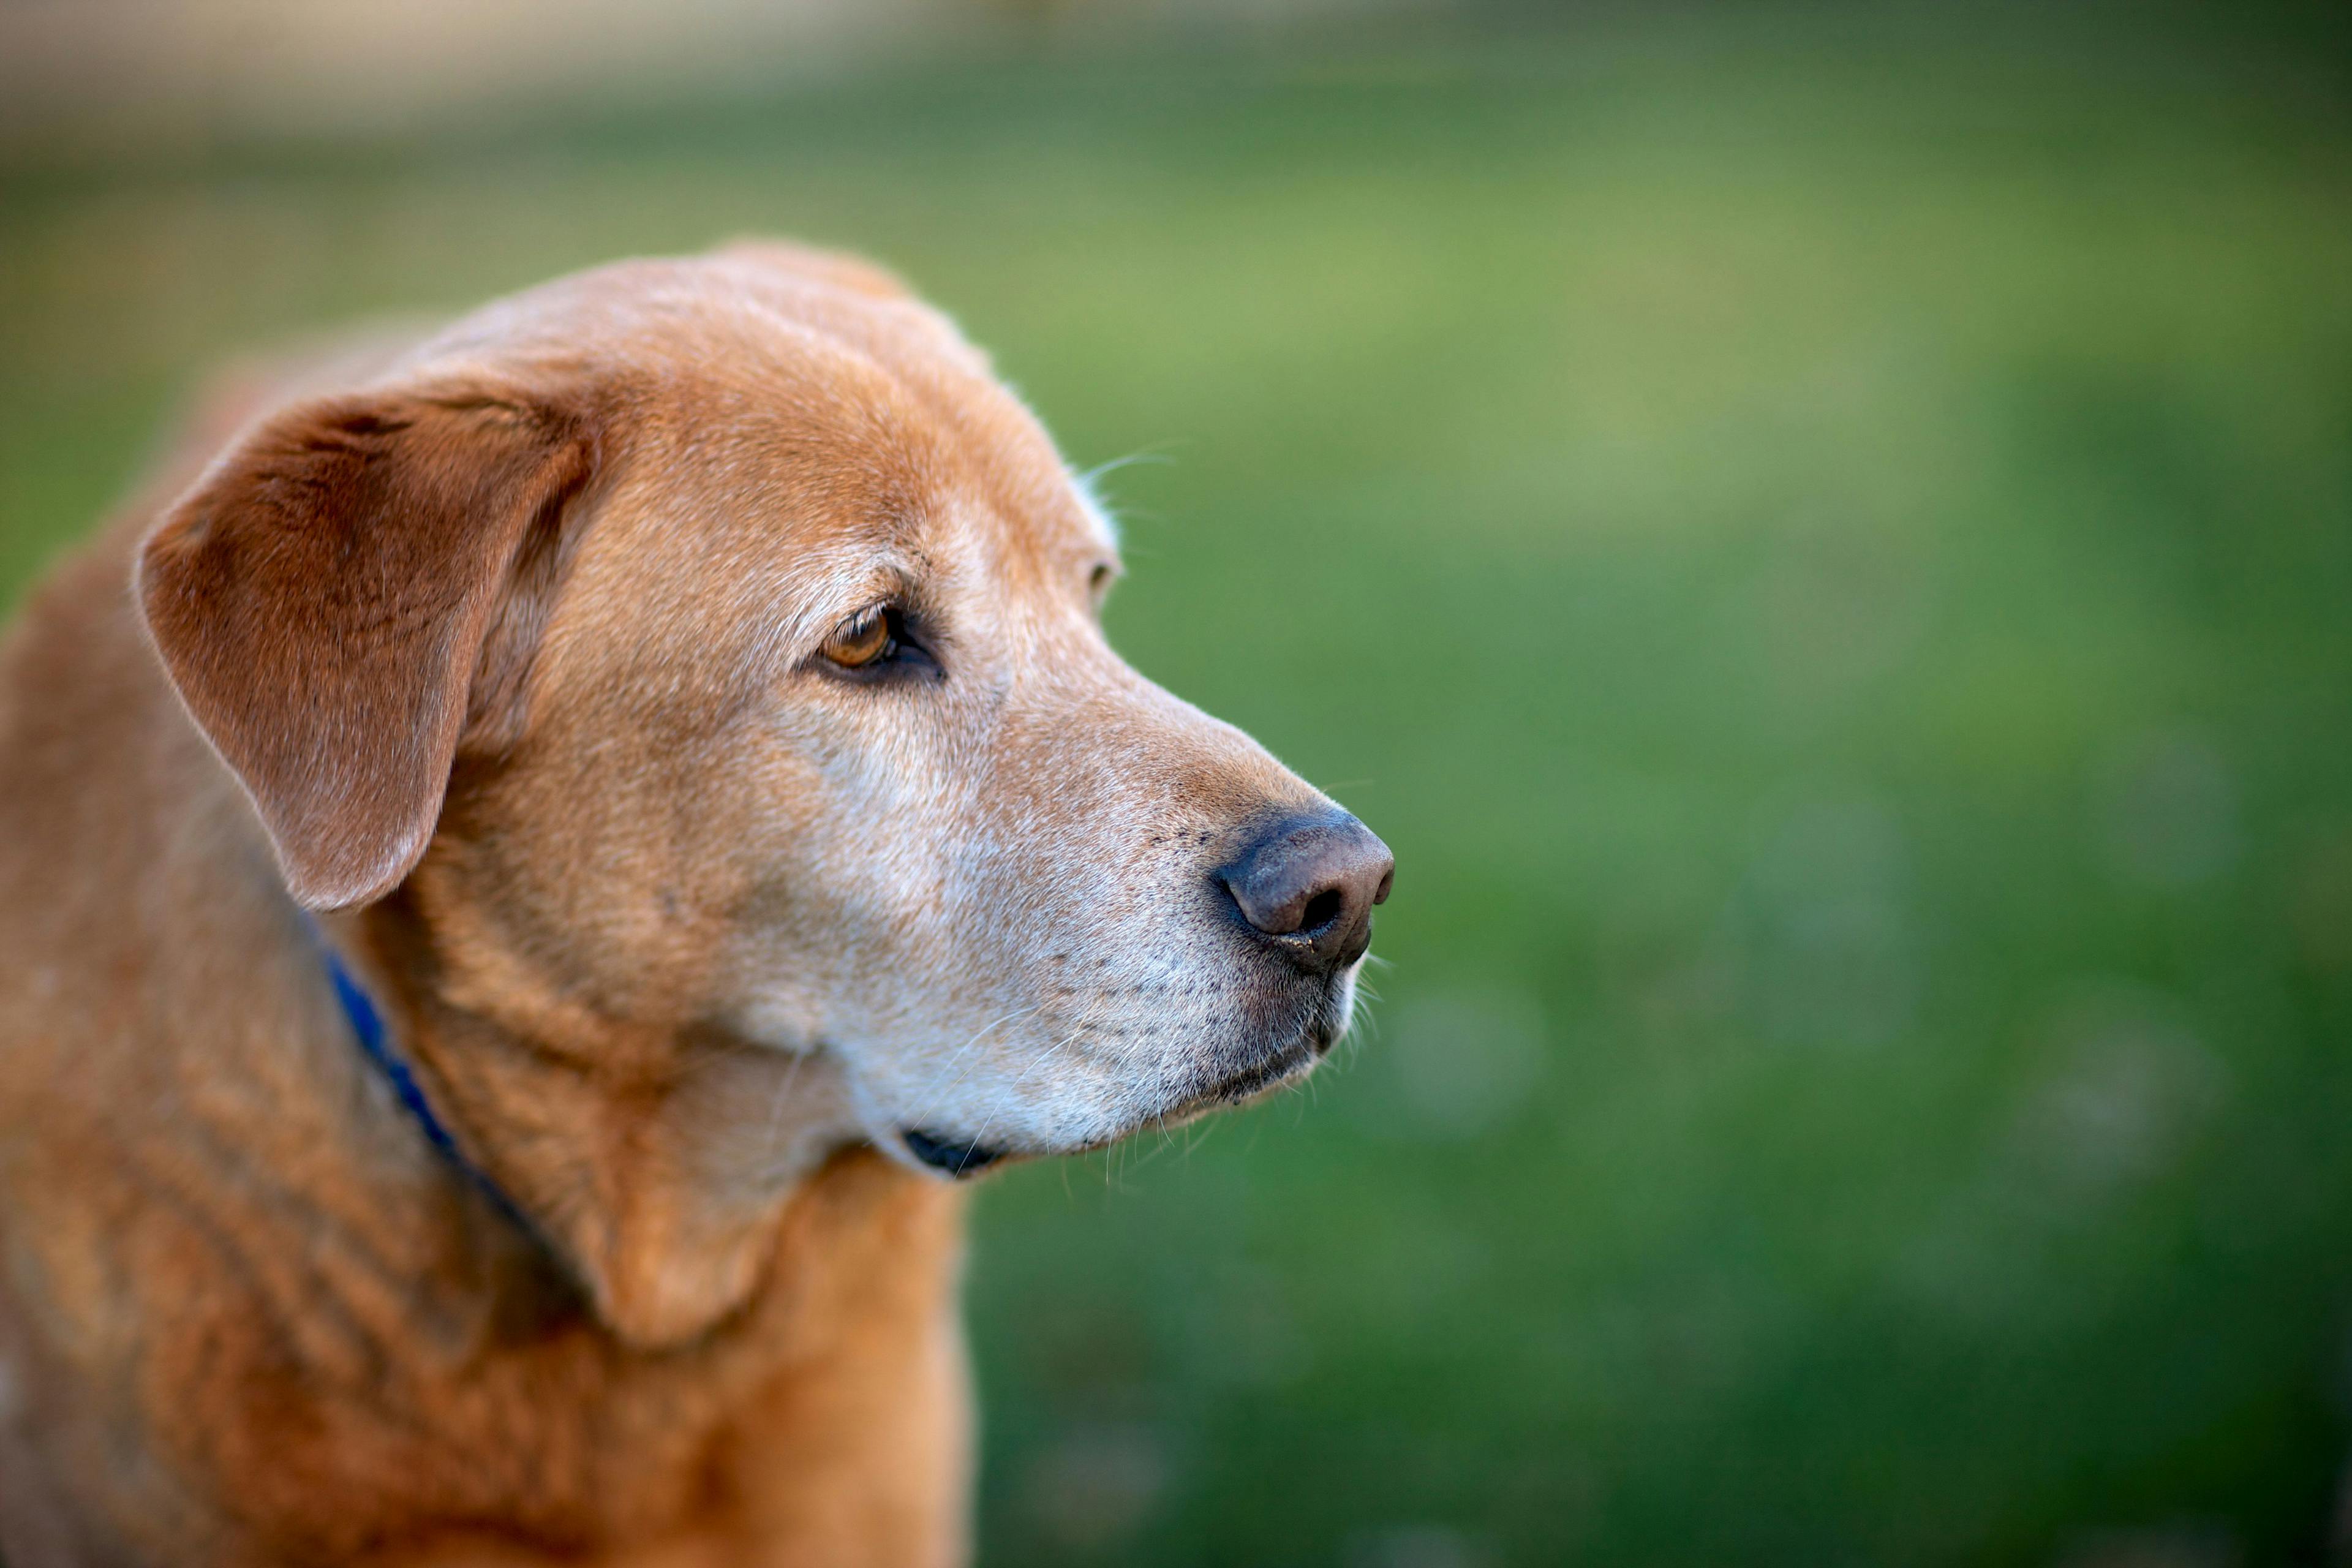 Nonpharmacologic management of canine osteoarthritis: Part 1